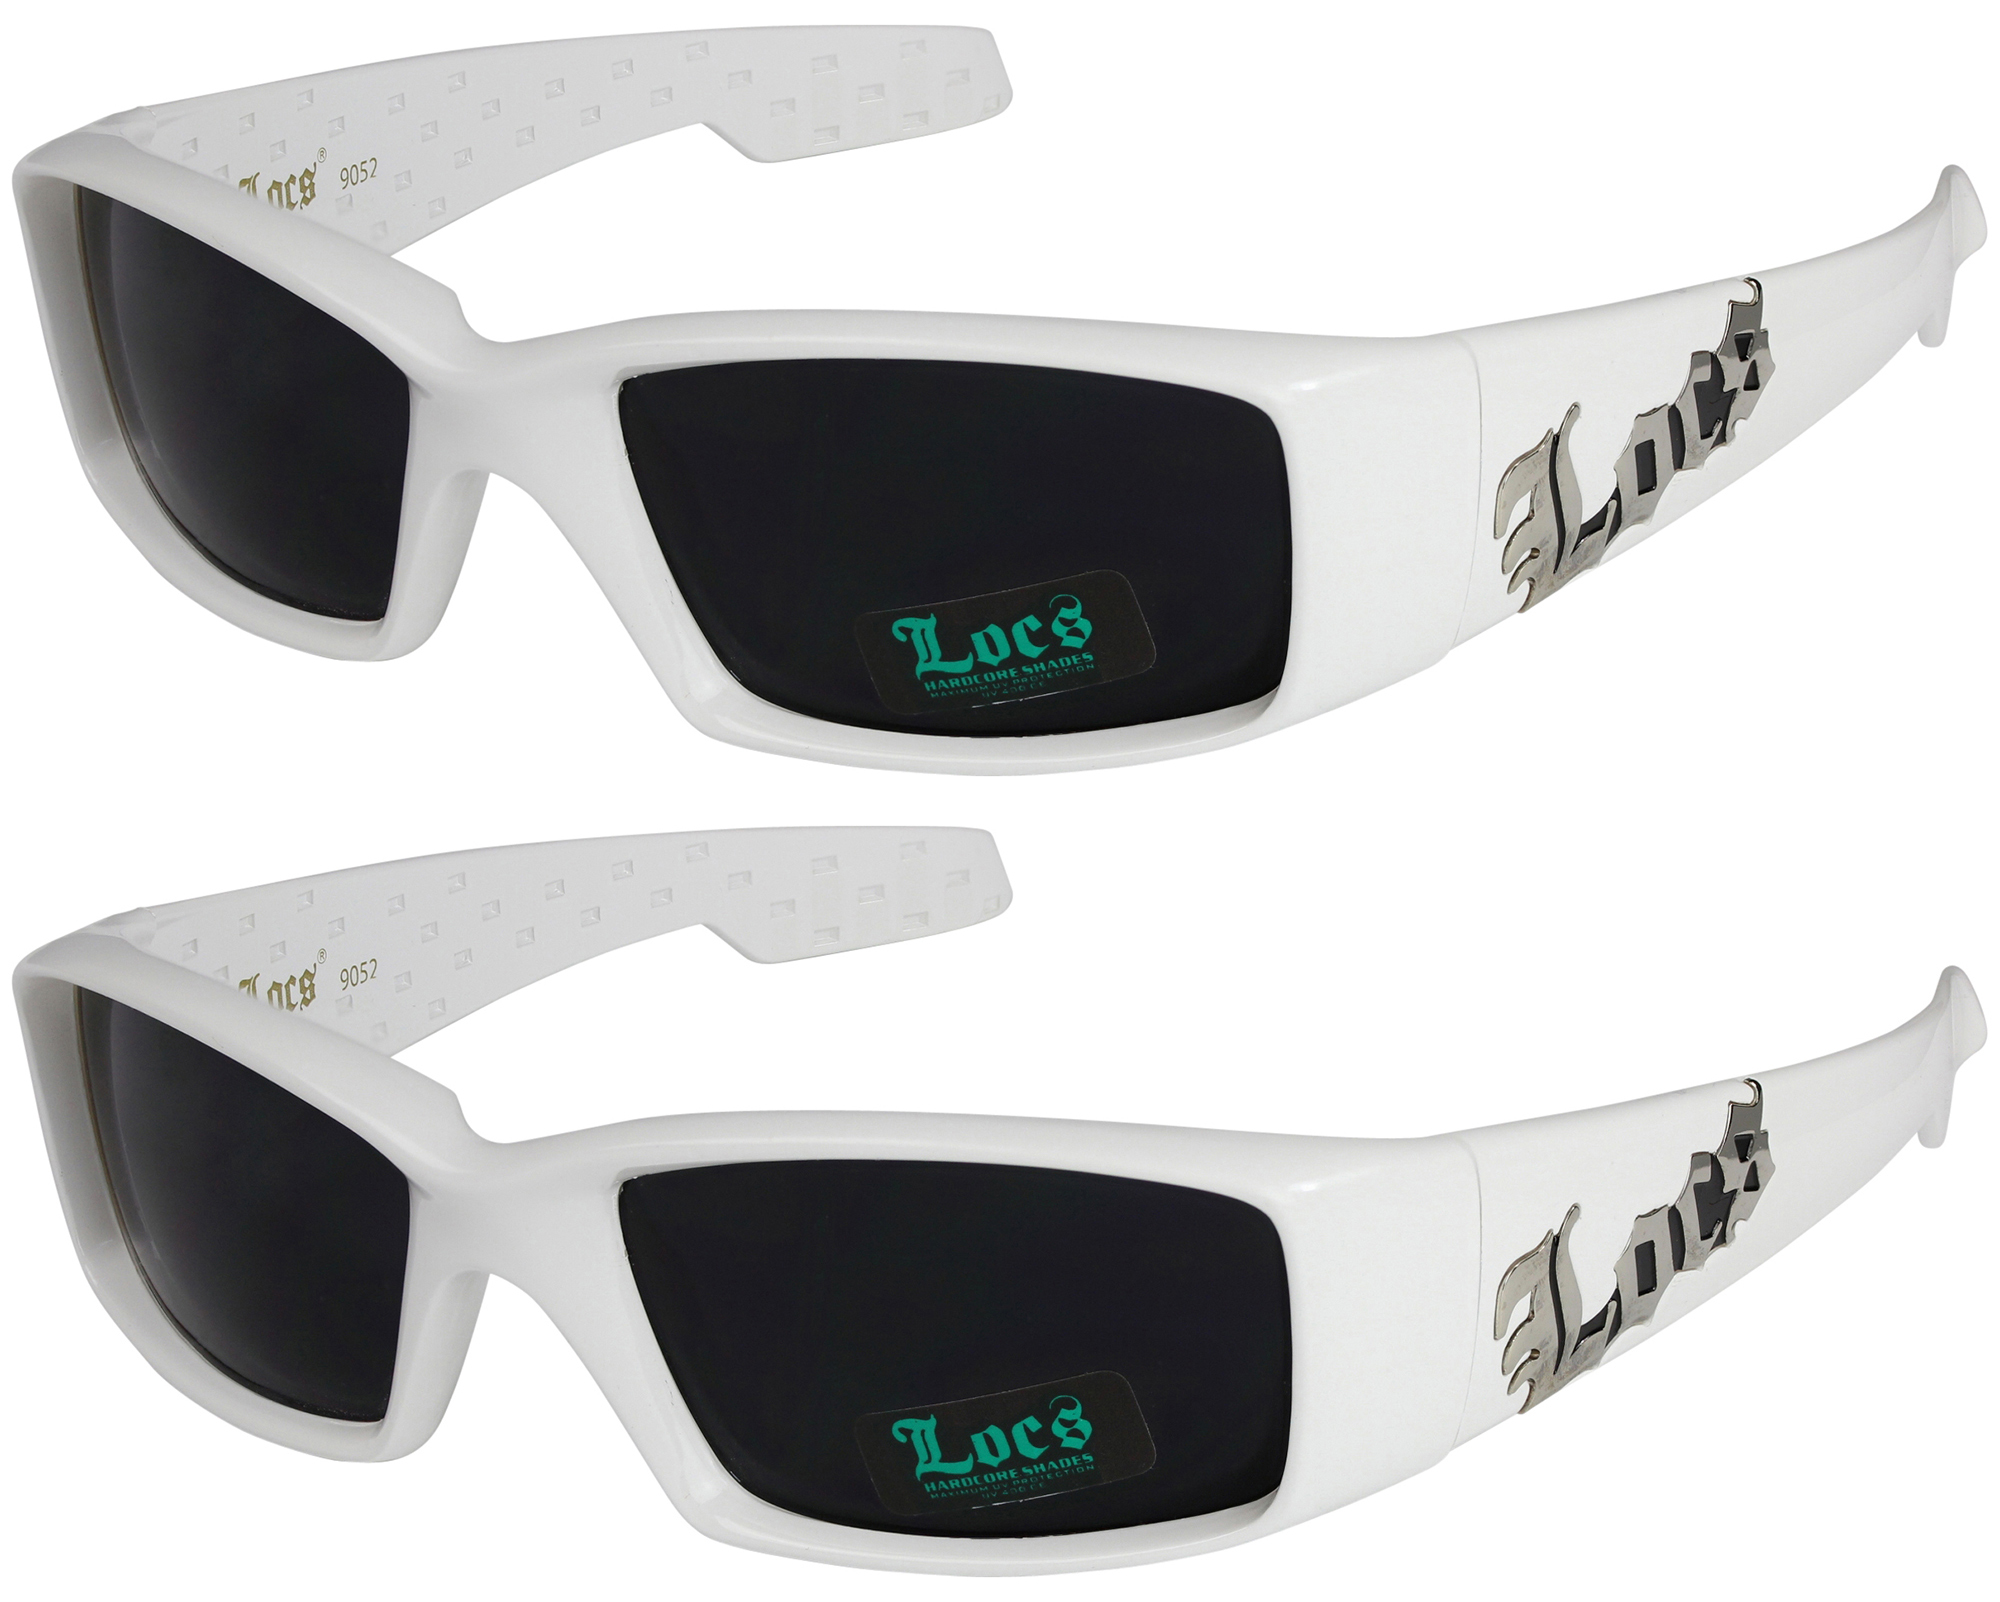 2er Pack Locs 9052 Choppers Sportbrille Sonnenbrille Herren Damen schwarz weiß 